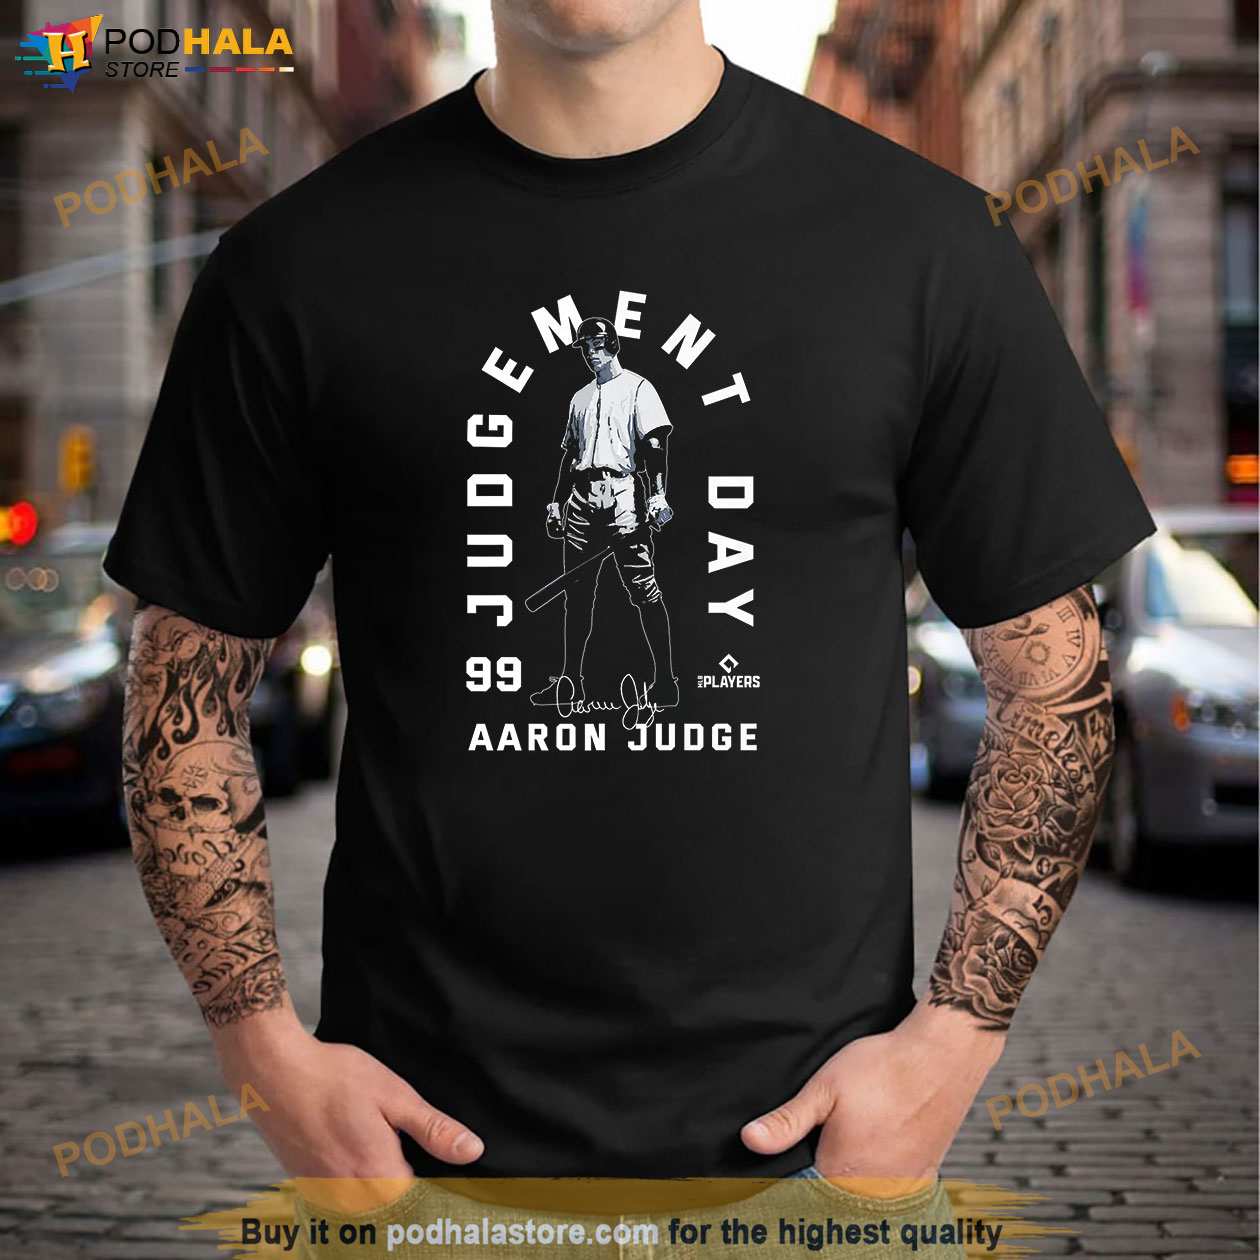 aaron judge shirt men